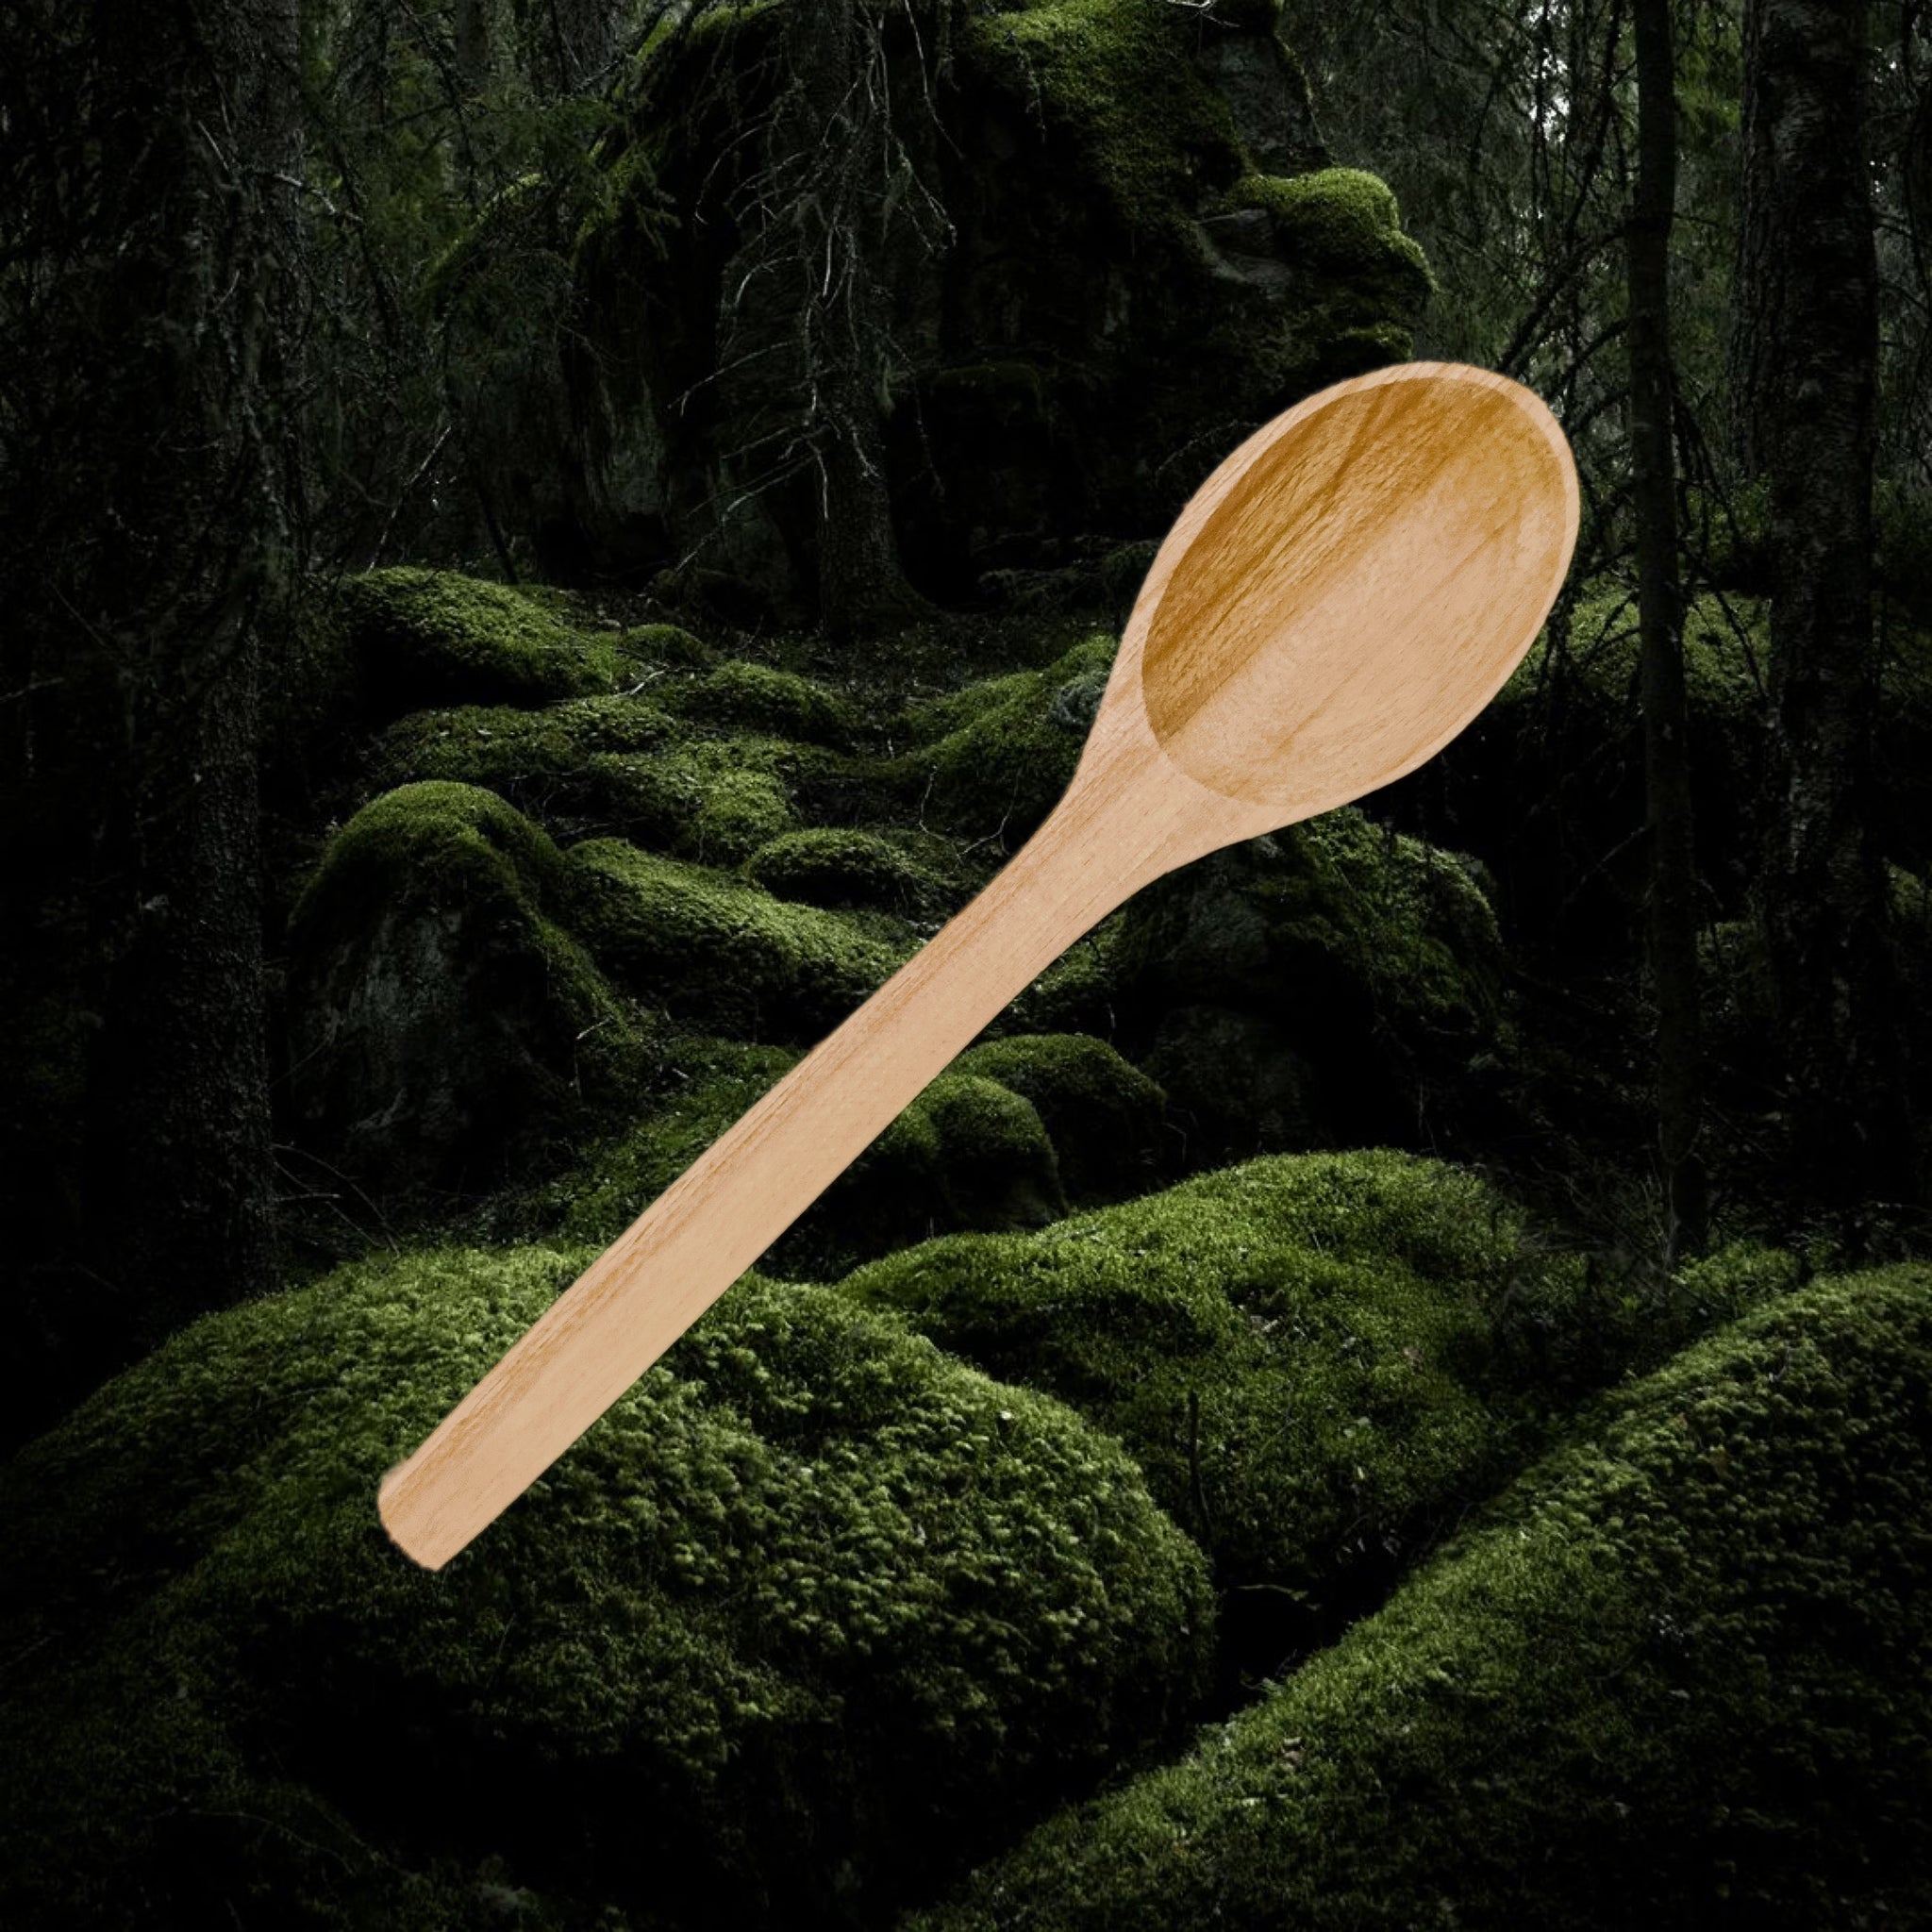 Cherry Wood Viking / Medieval Spoon